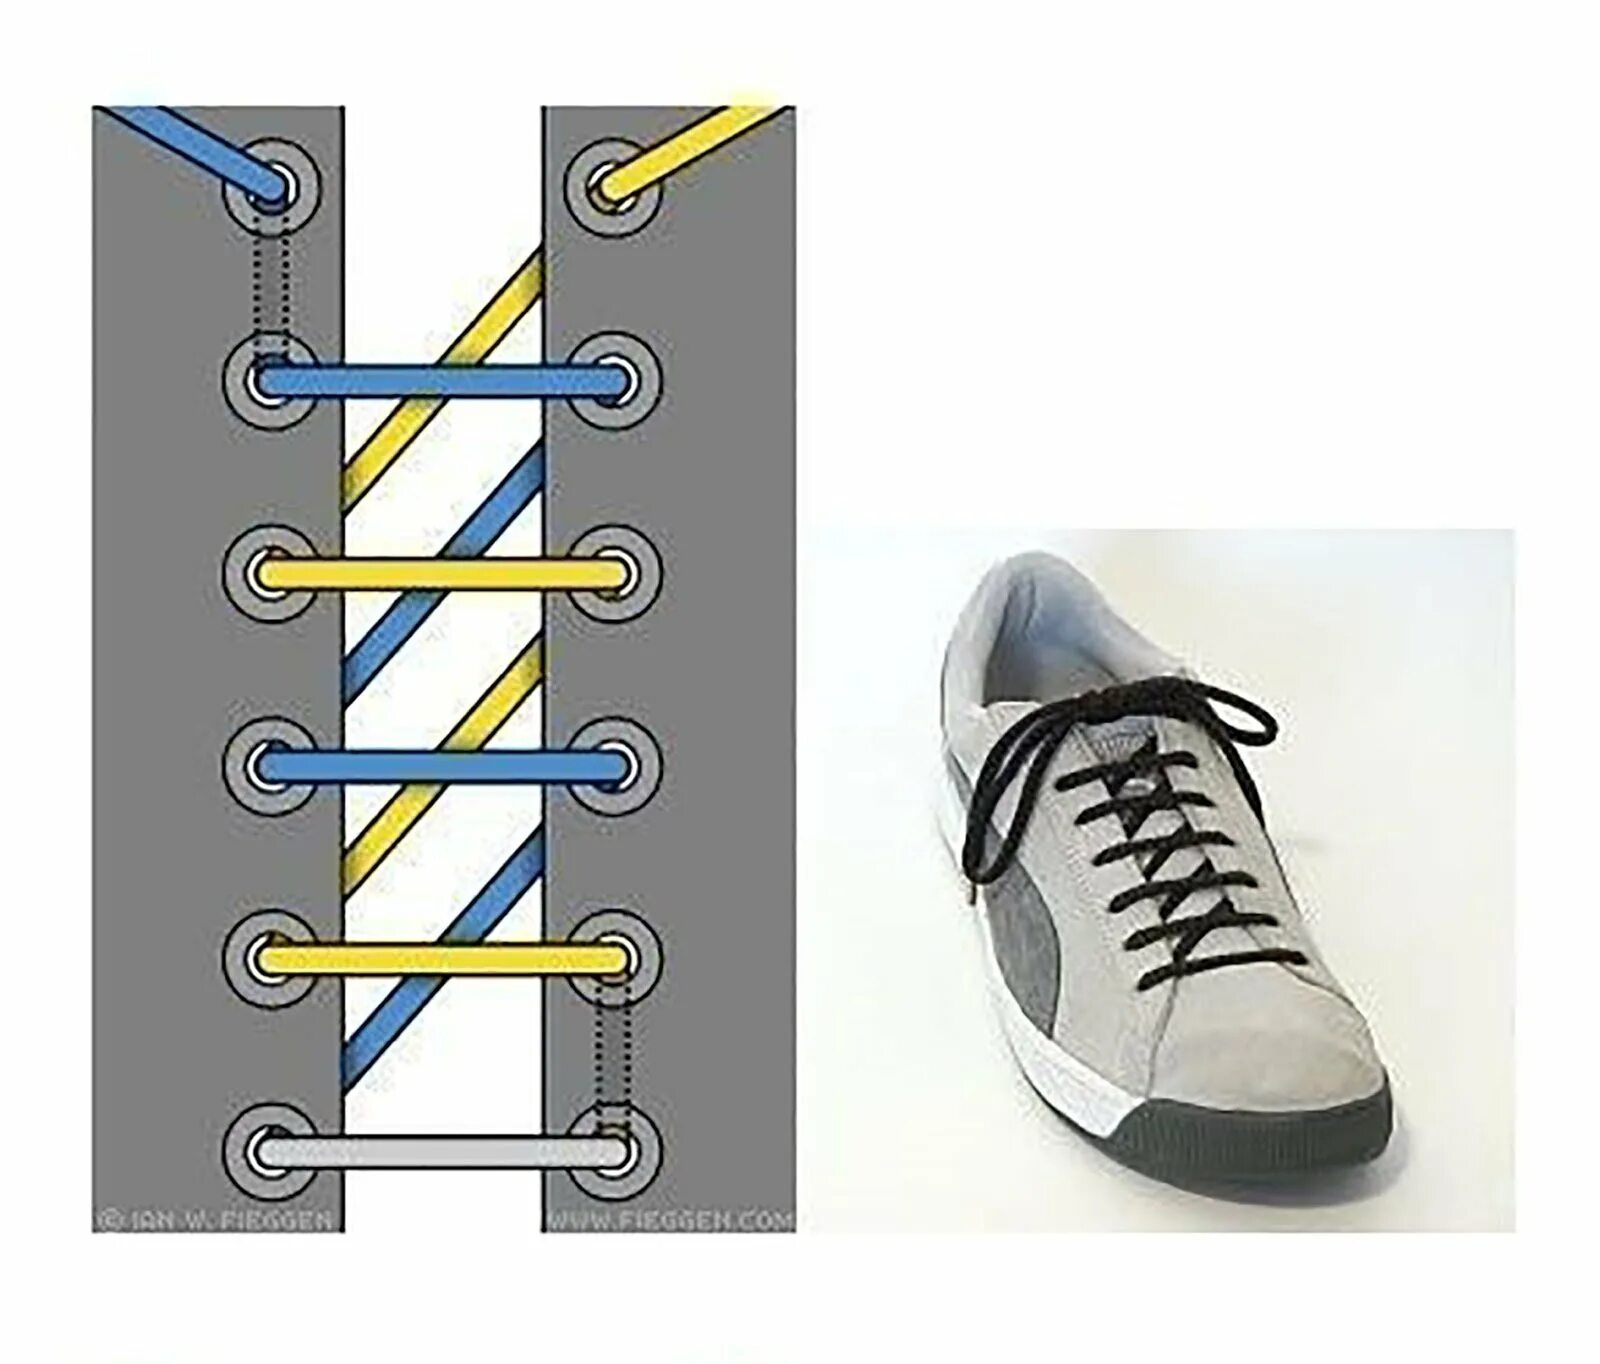 Типы шнурования шнурков на 5 дырок. Шнурки зашнуровать 6 дырок. Способы завязывания шнурков на 5 дырок. Типы шнурования шнурков на 6 отверстий. Как красиво зашнуровать кроссовки пошагово